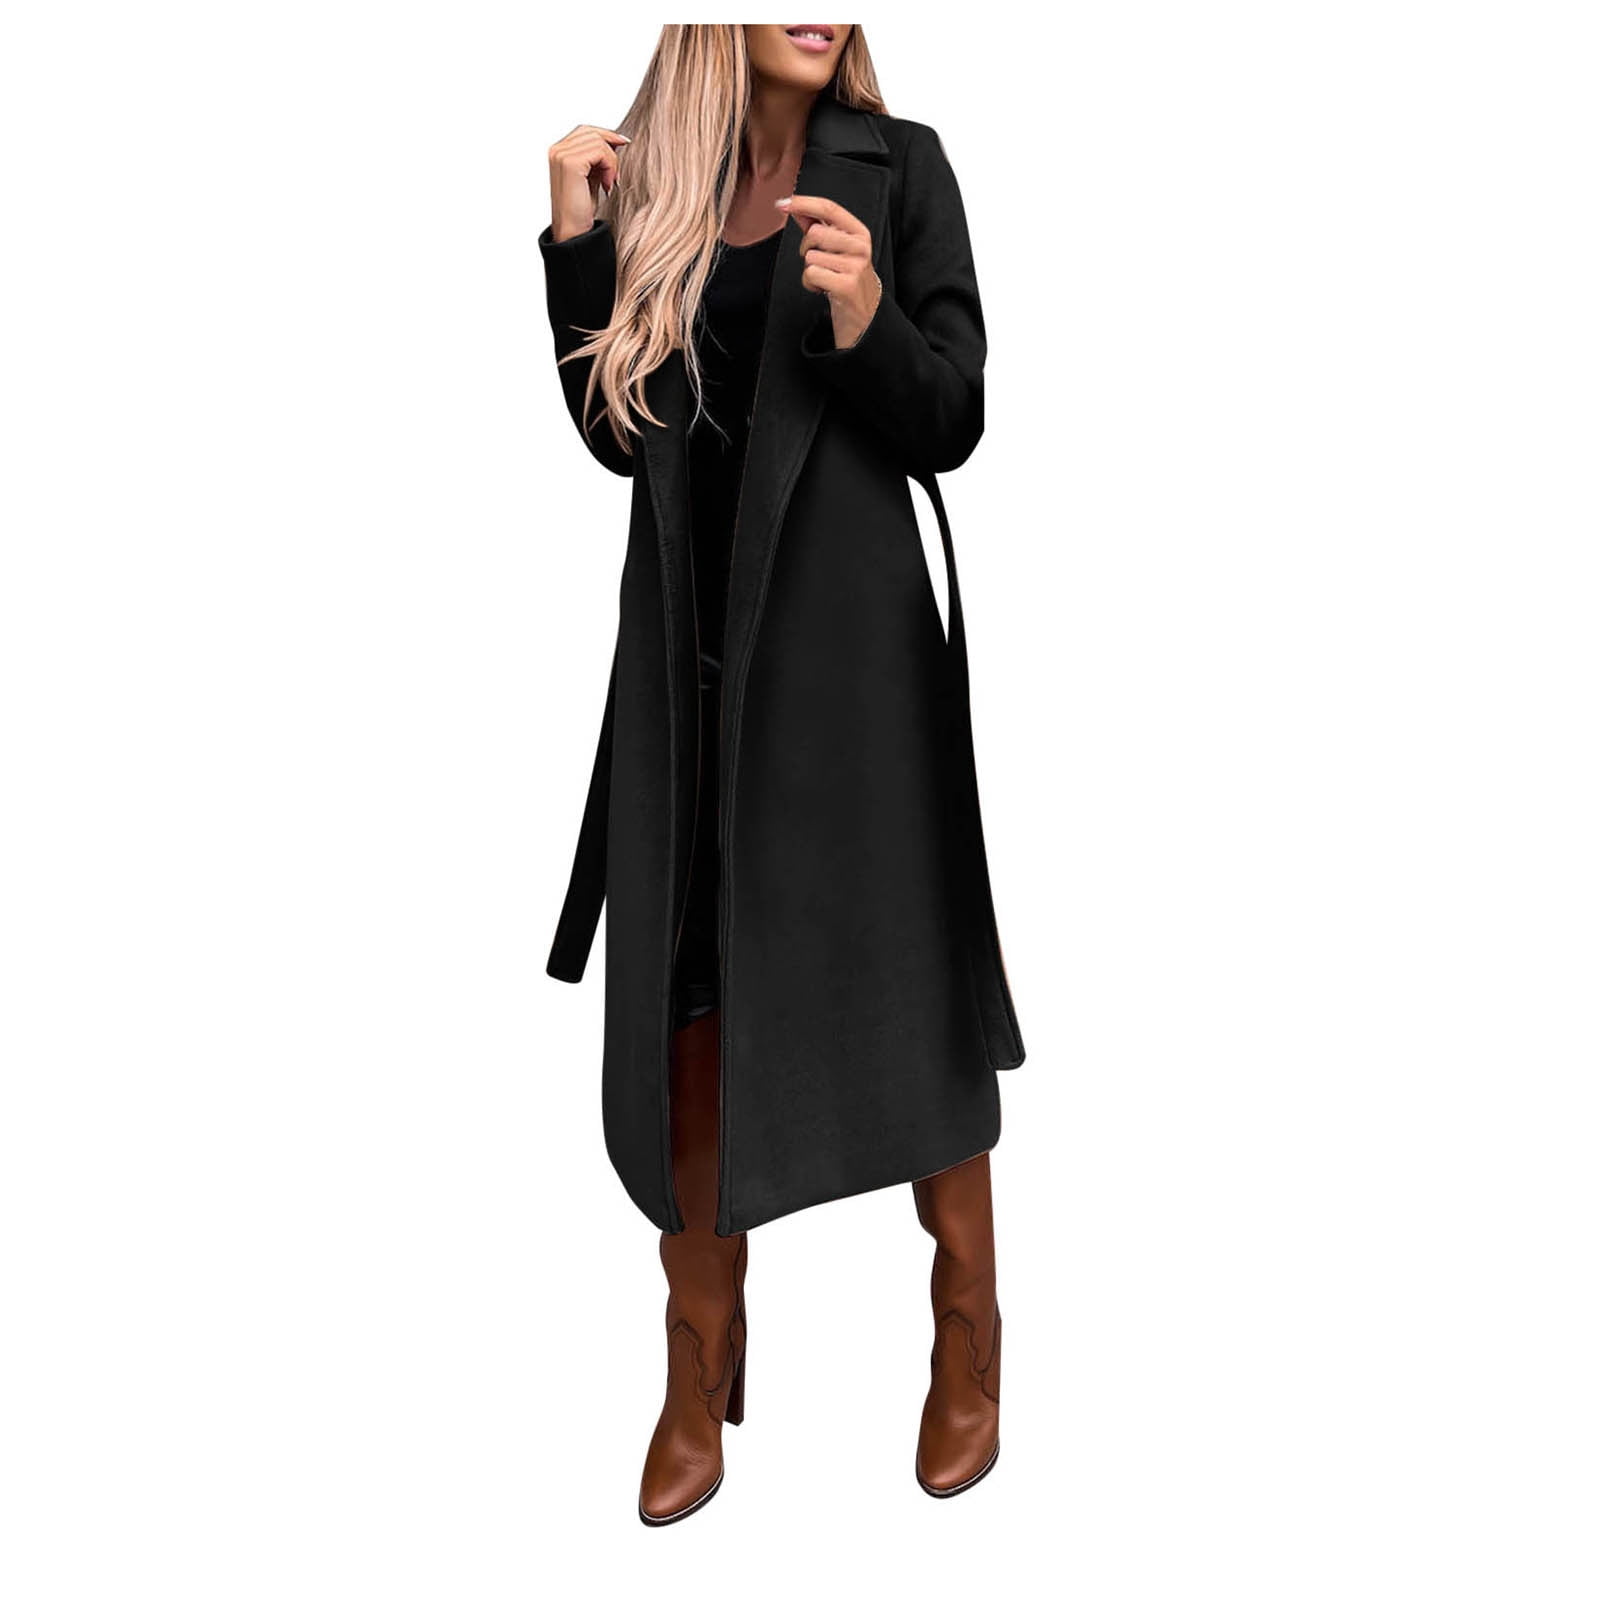 MRULIC winter coats for women Women's Faux Wool Coat Blouse Thin Coat  Trench Long Jacket Ladies Slim Long Belt Elegant Overcoat Outwear Black +  XXL